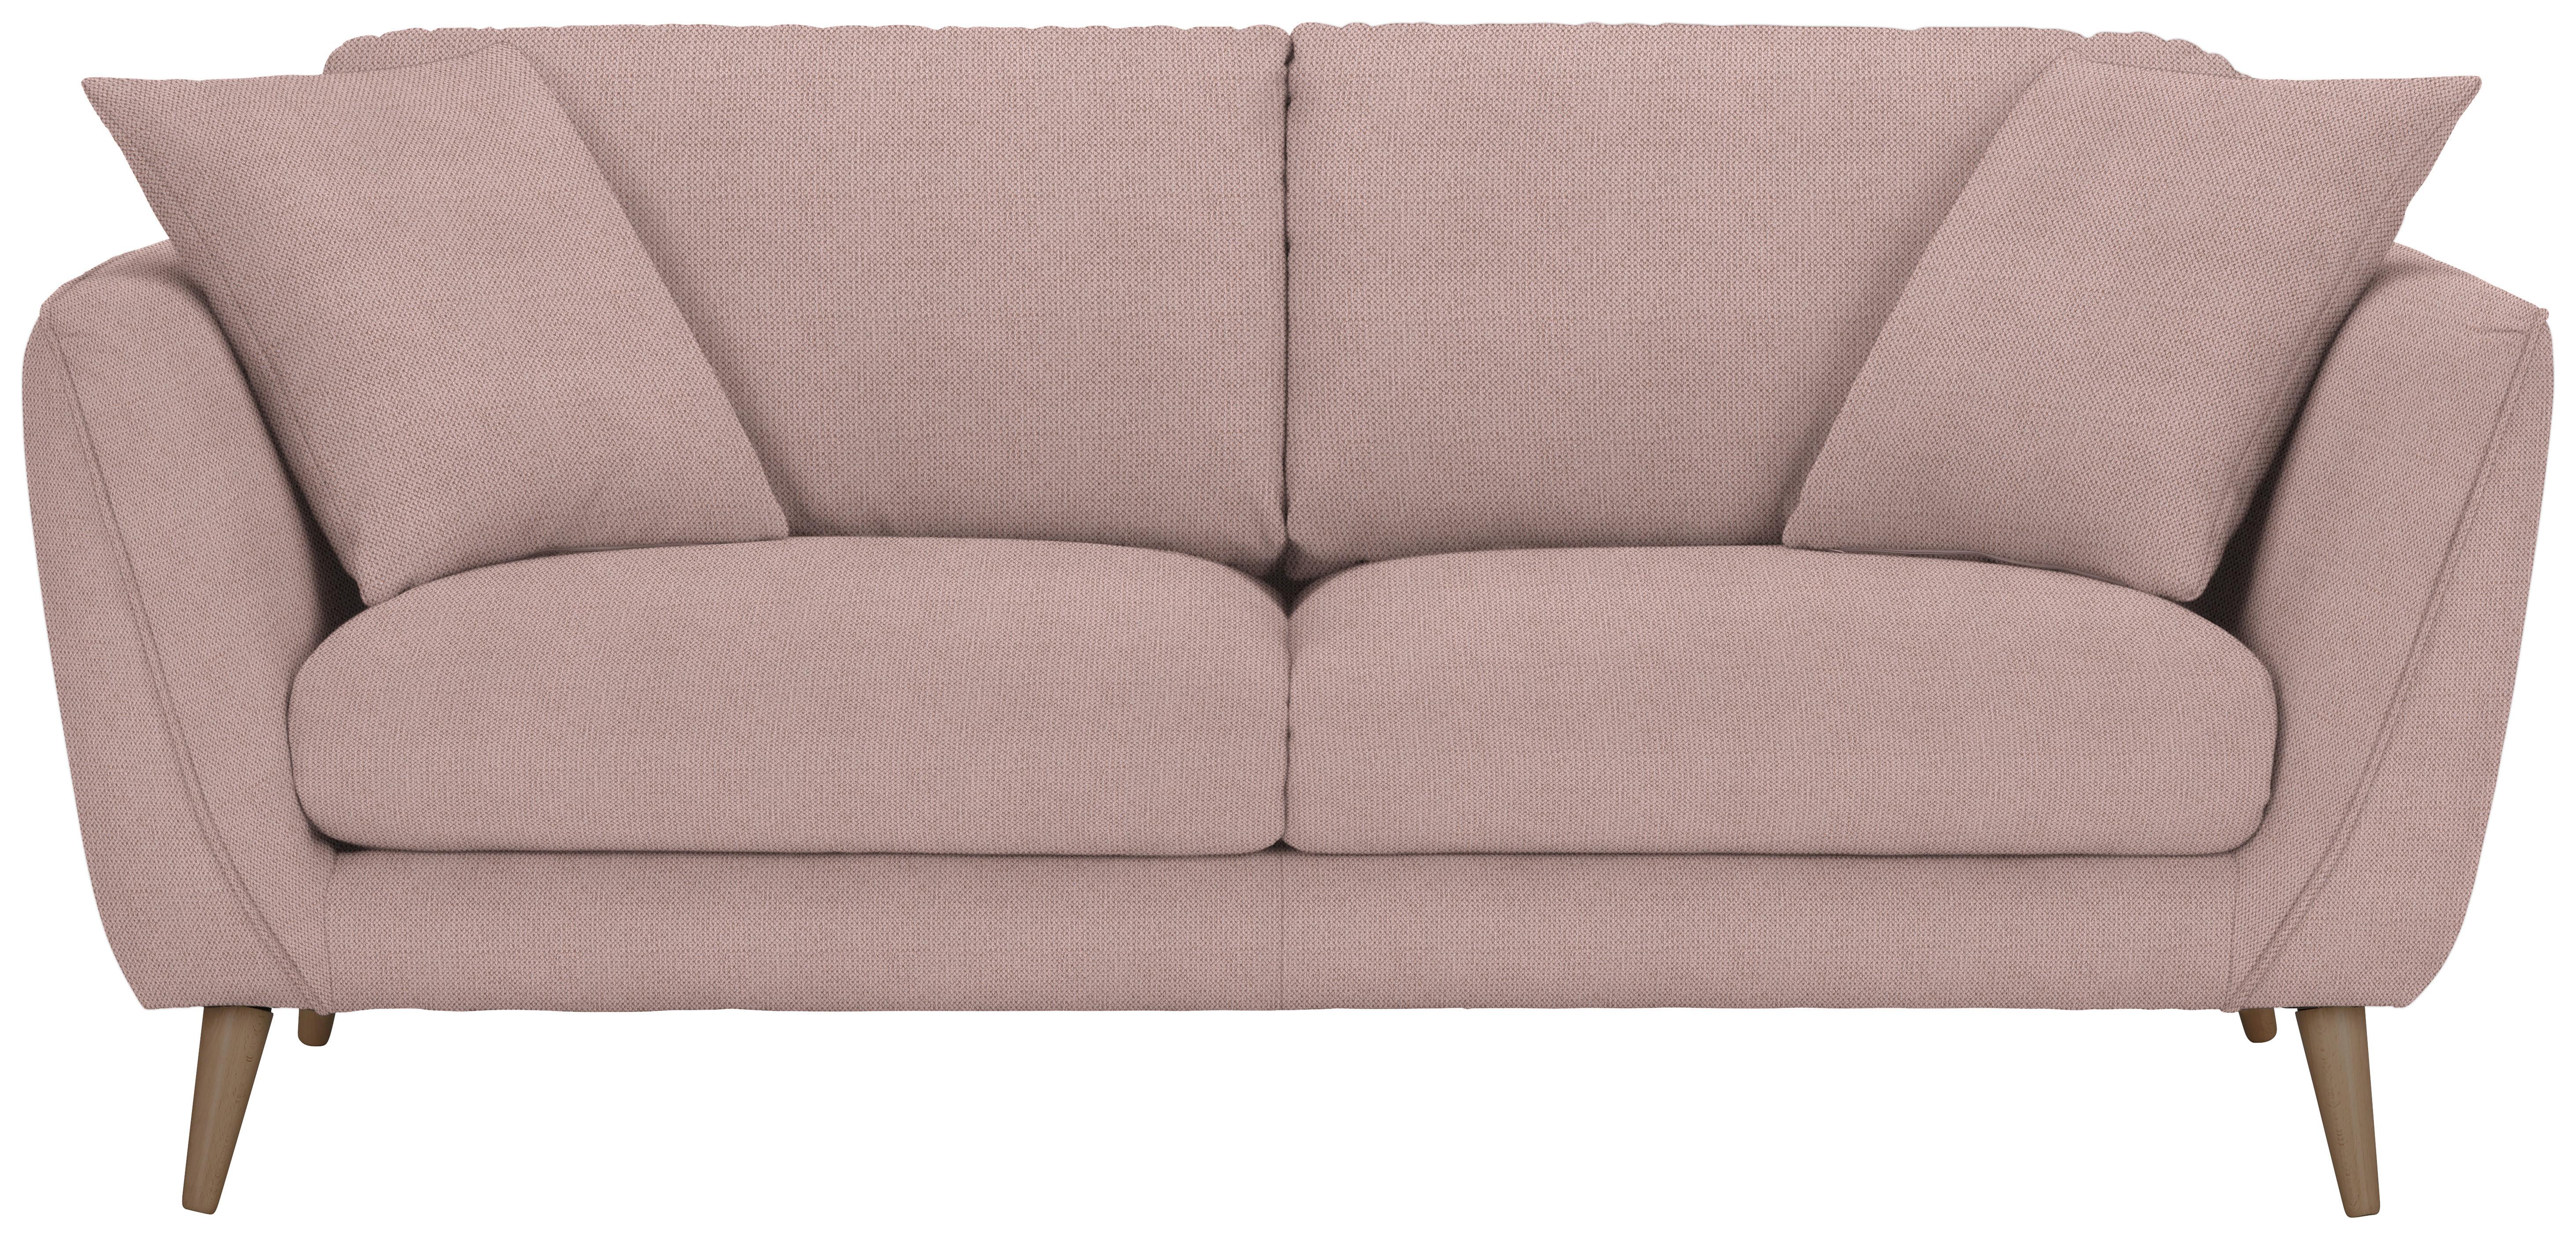 2-Sitzer-Sofa Nicolo in Rosa - Rosa/Naturfarben, Konventionell, Textil (190/70/47/97cm) - Zandiara